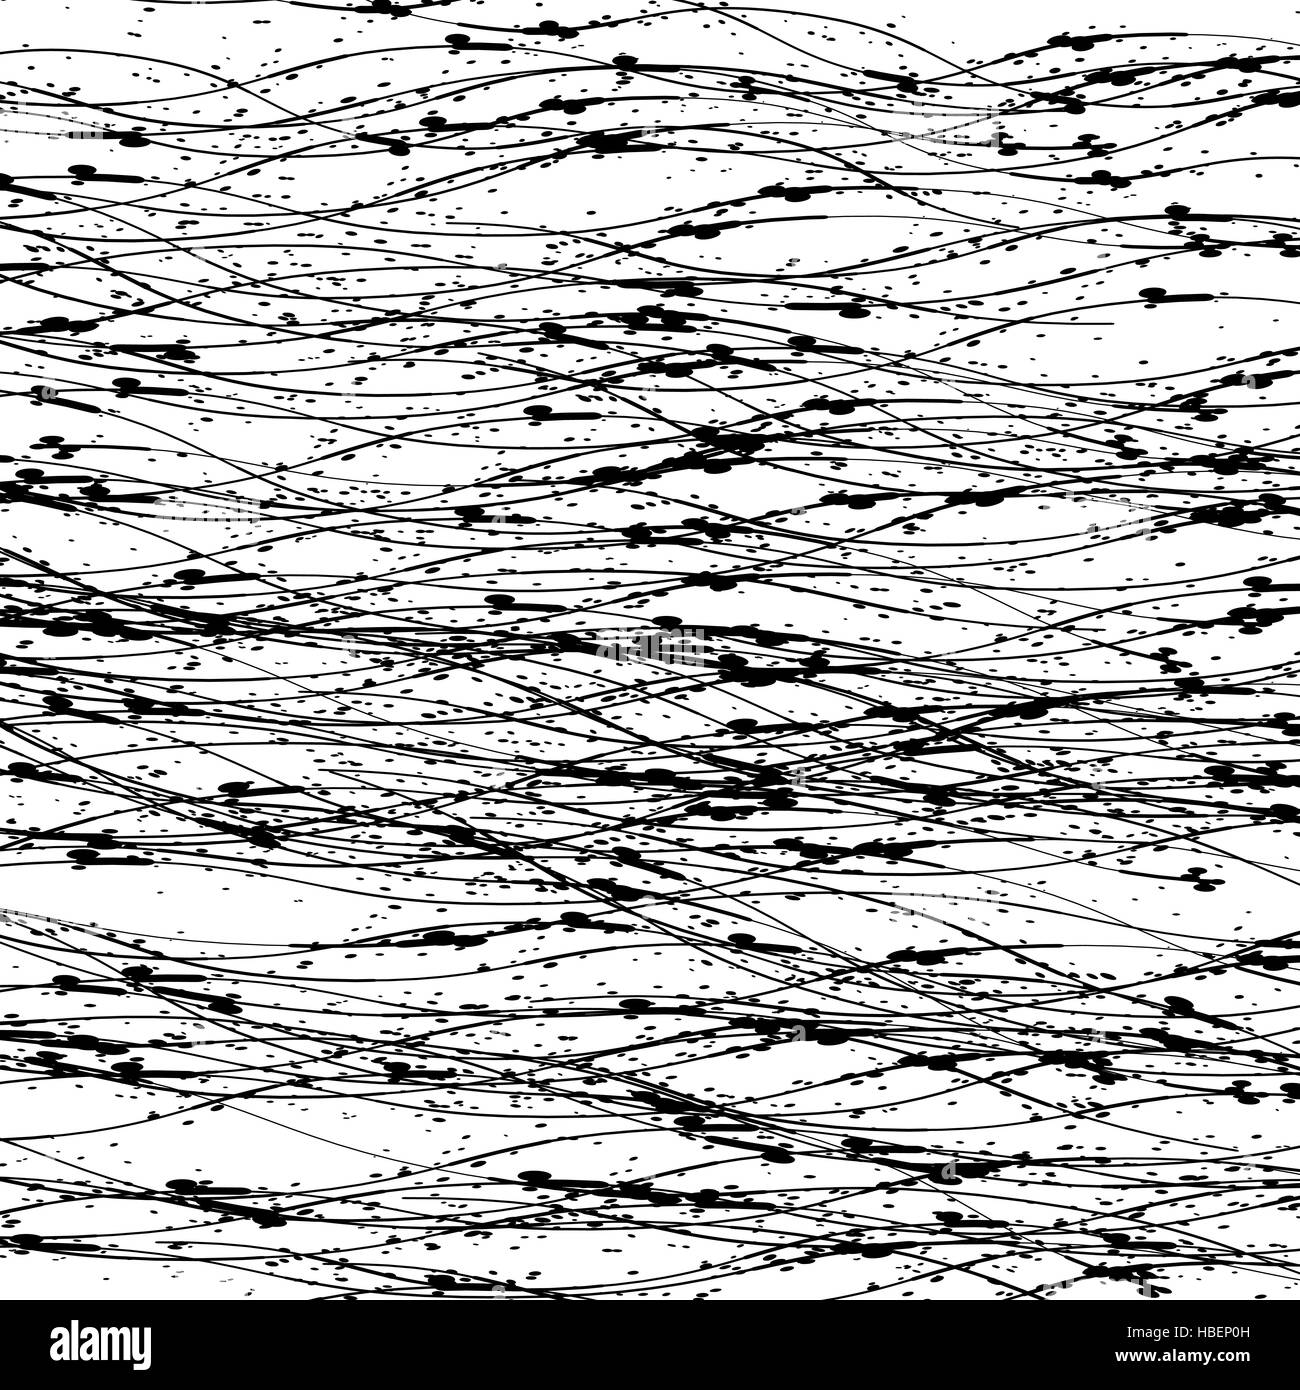 Abstract Grunge Texture. Inchiostro nero lo sfondo Foto Stock